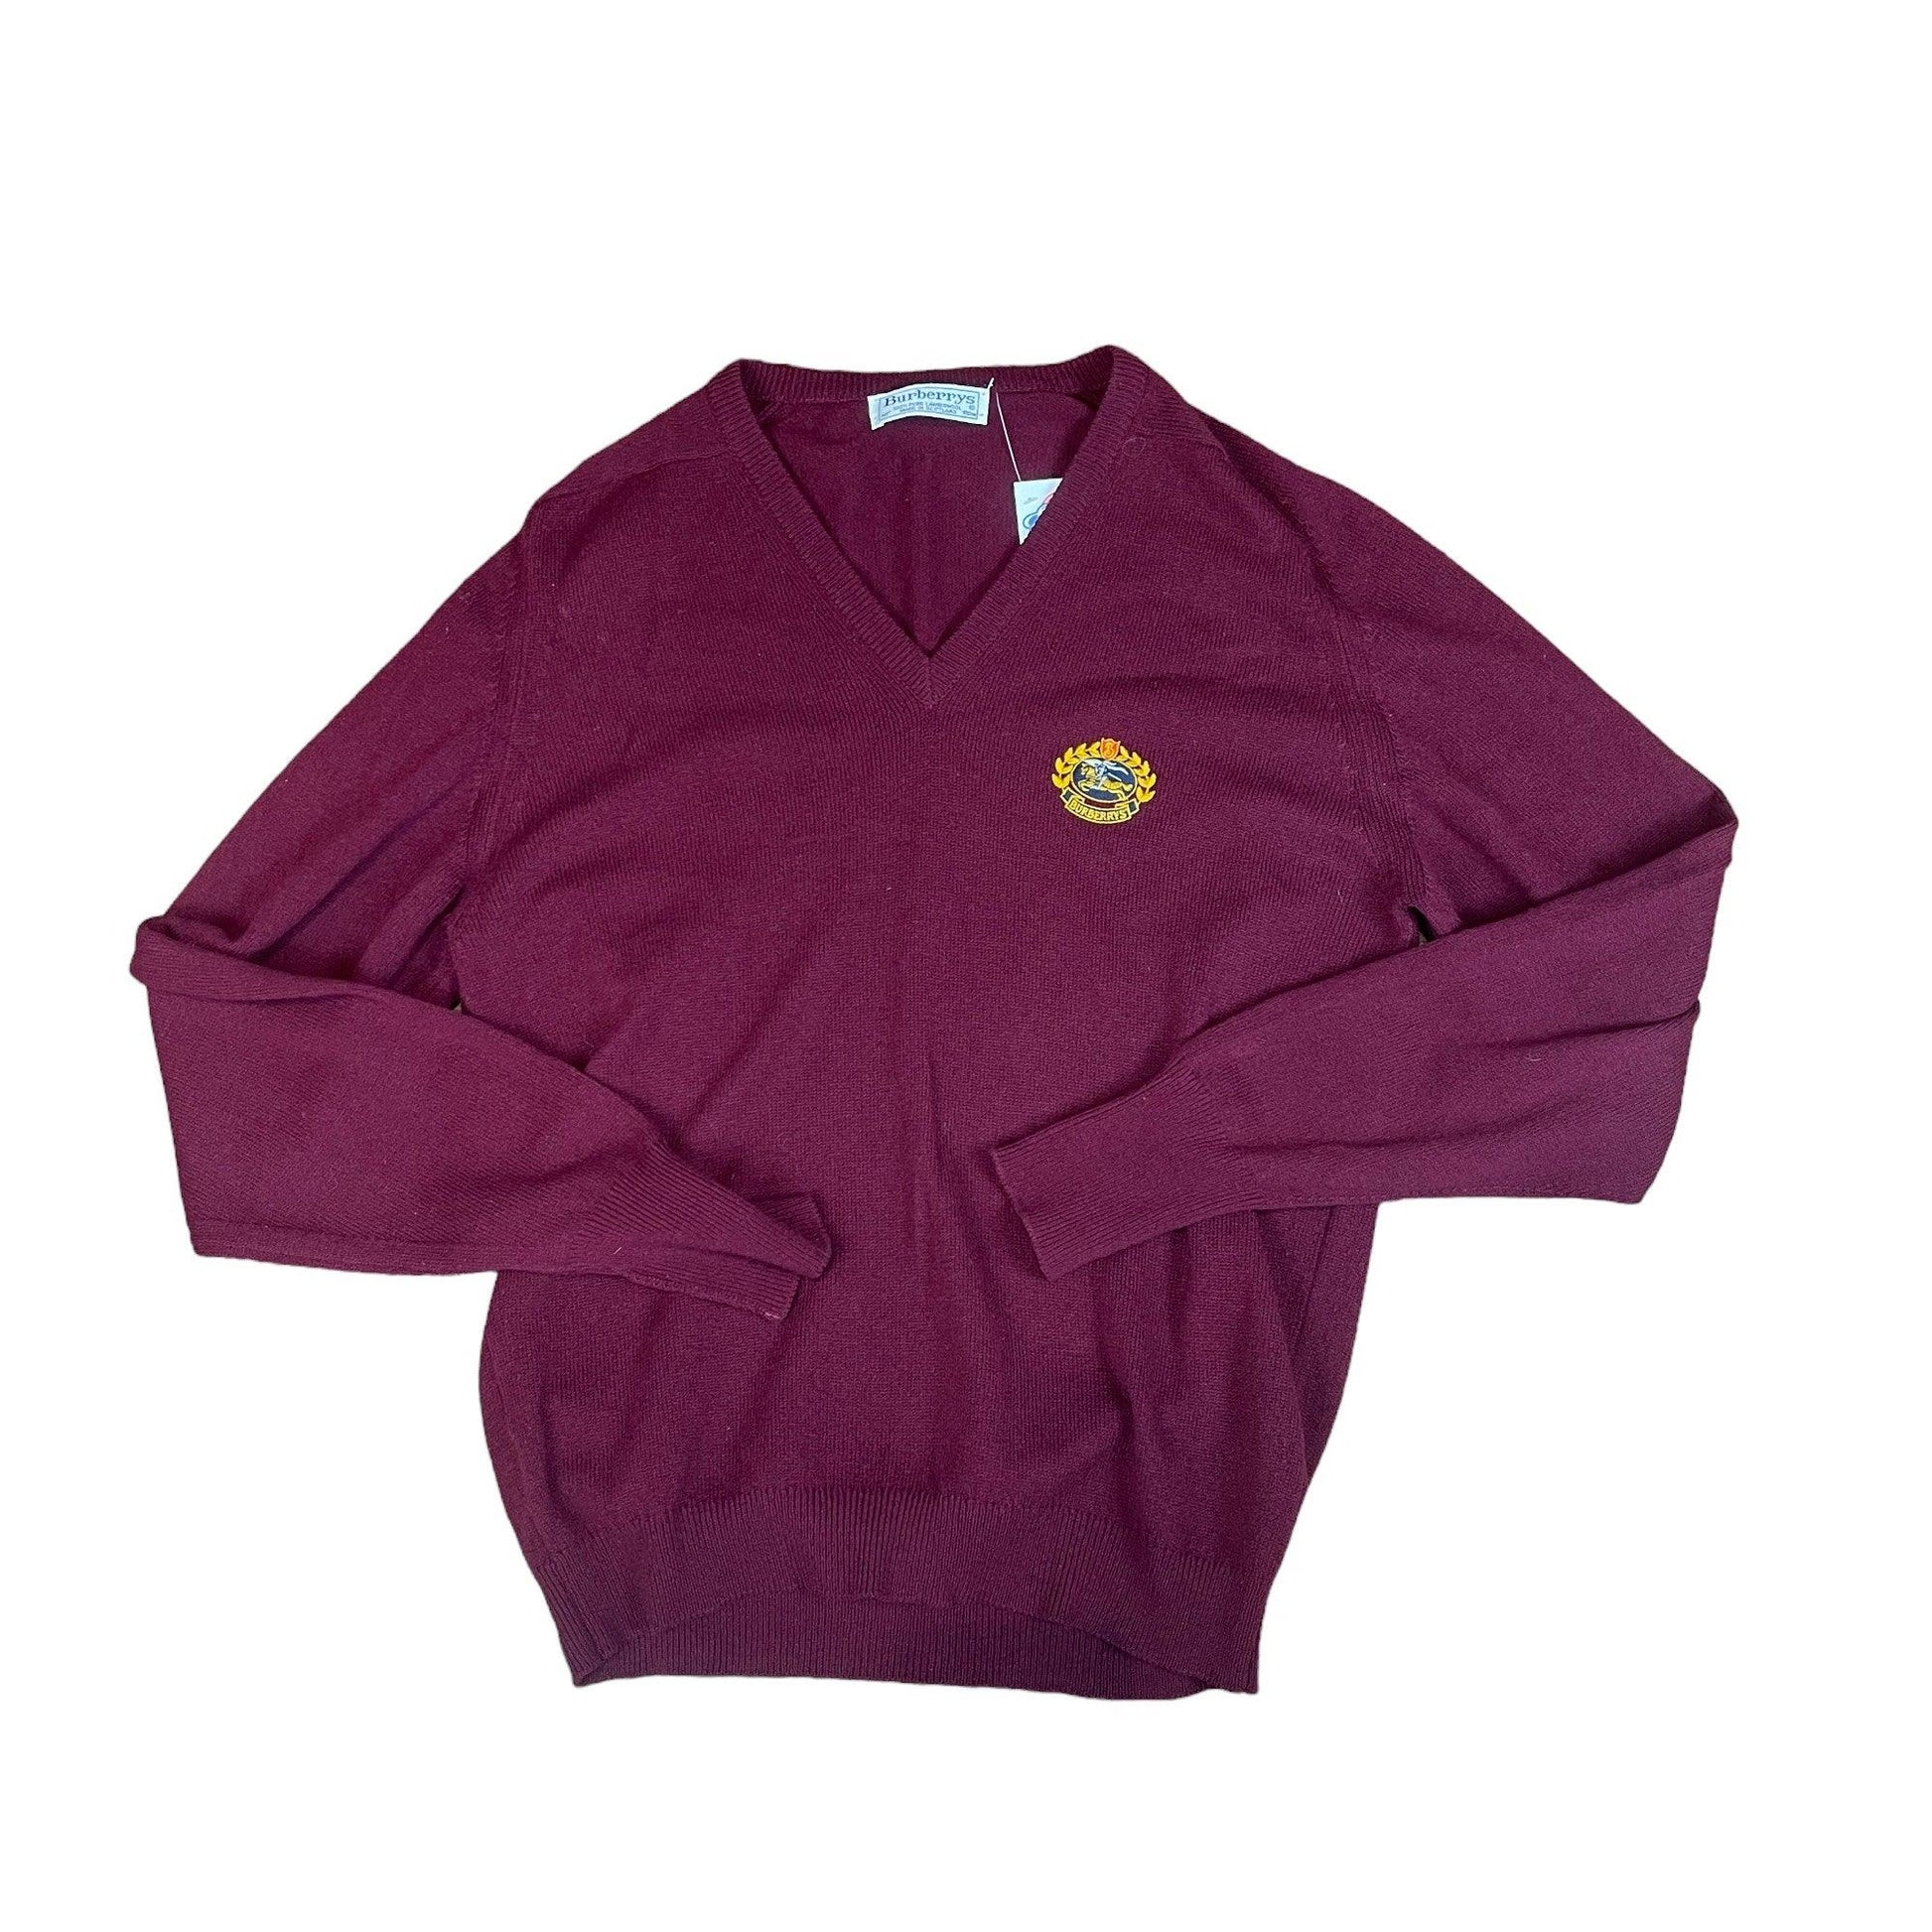 Vintage 90s Burgundy Burberry Knitted Sweatshirt - Large - The Streetwear Studio